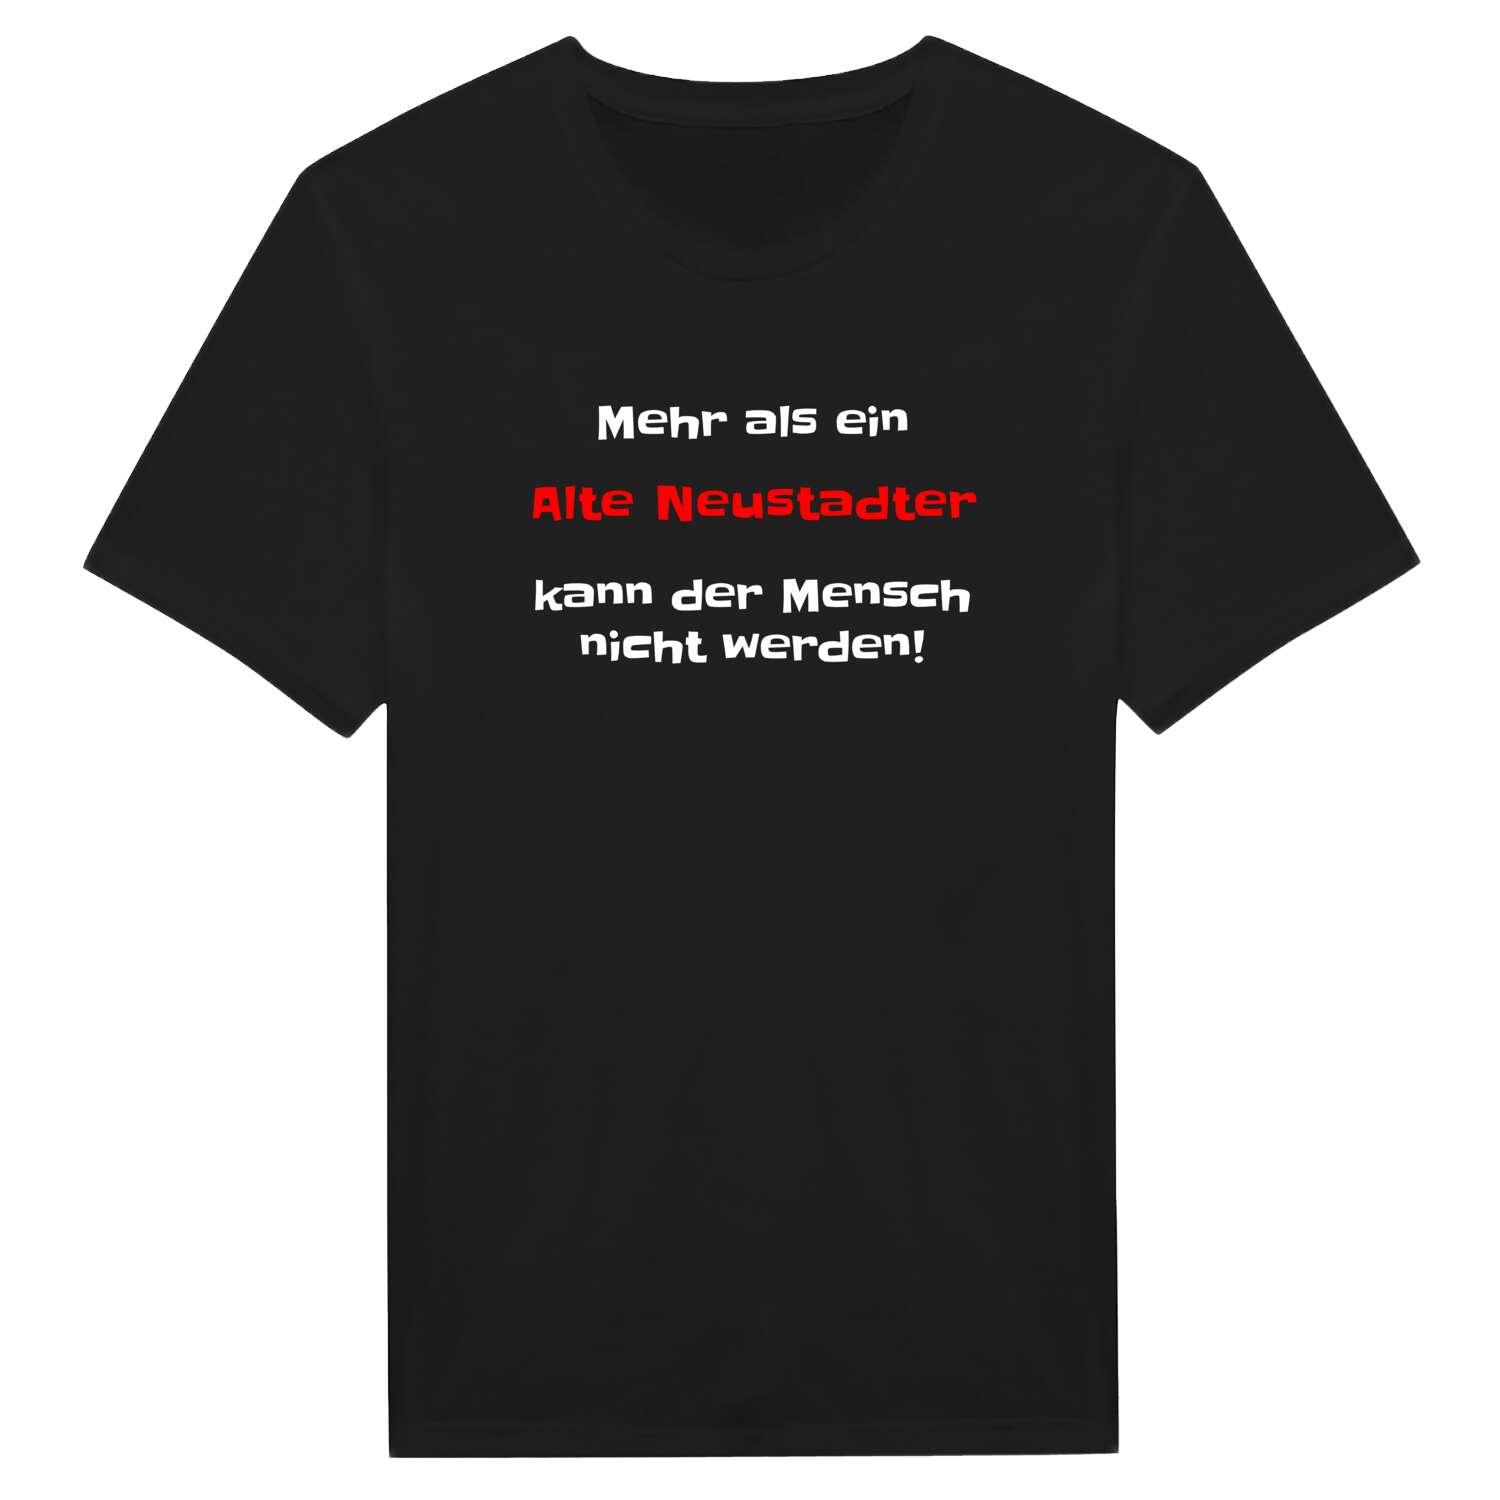 Alte Neustadt T-Shirt »Mehr als ein«